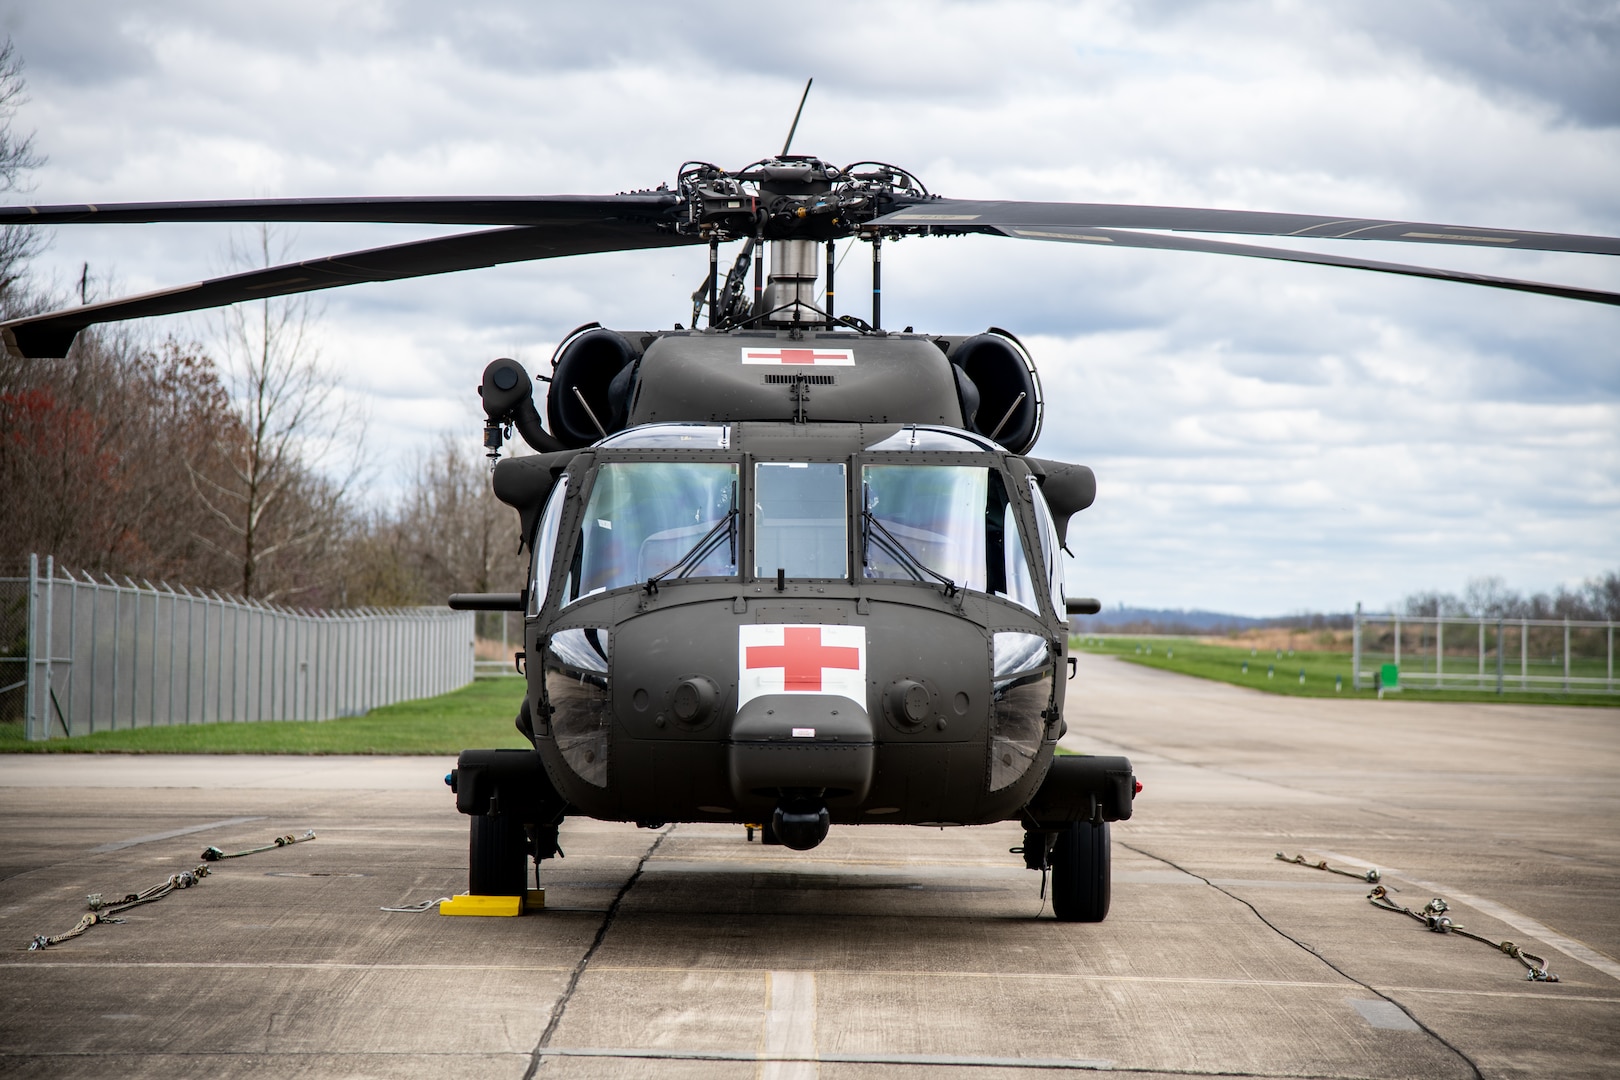 Black Hawk helicopter external shot, sitting on asphalt air strip.